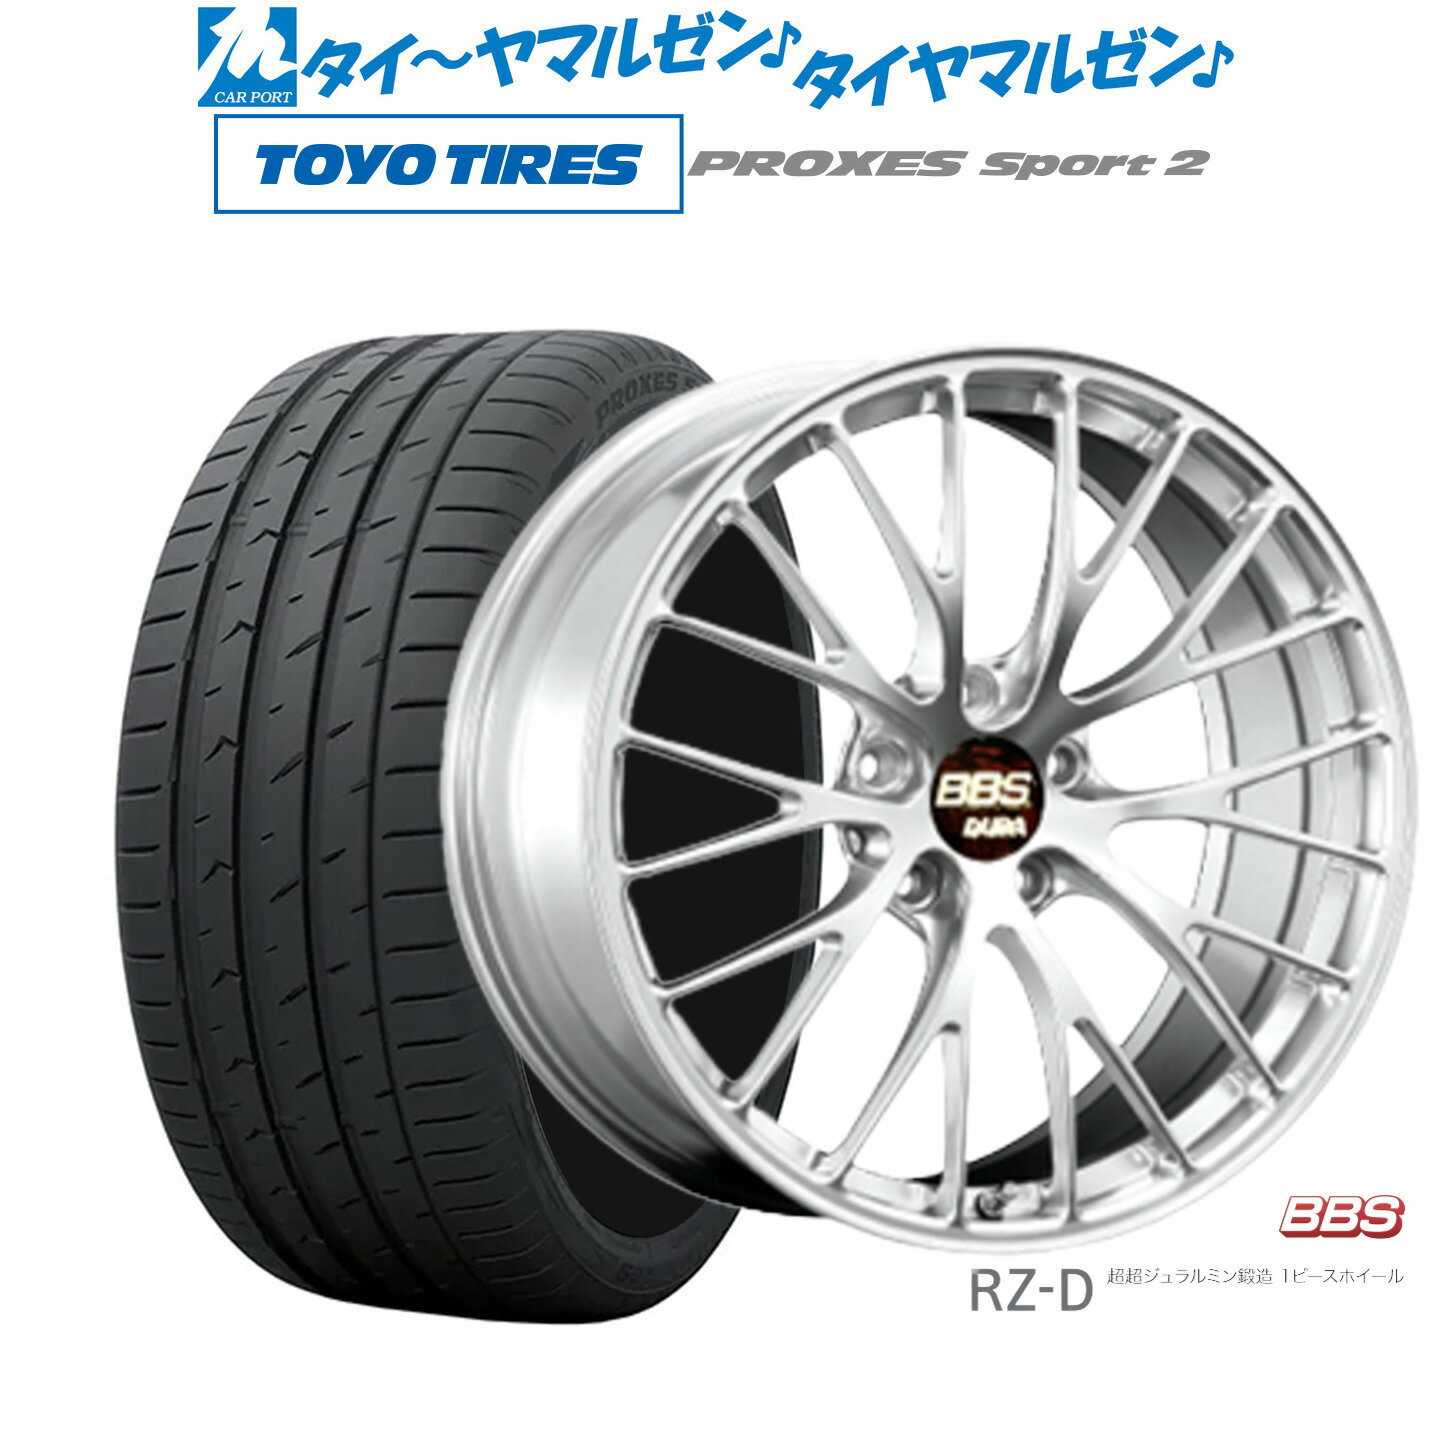 [5/20]割引クーポン配布新品 サマータイヤ ホイール4本セットBBS JAPAN RZ-D20インチ 8.5Jトーヨータイヤ プロクセス PROXES スポーツ2 245/35R20